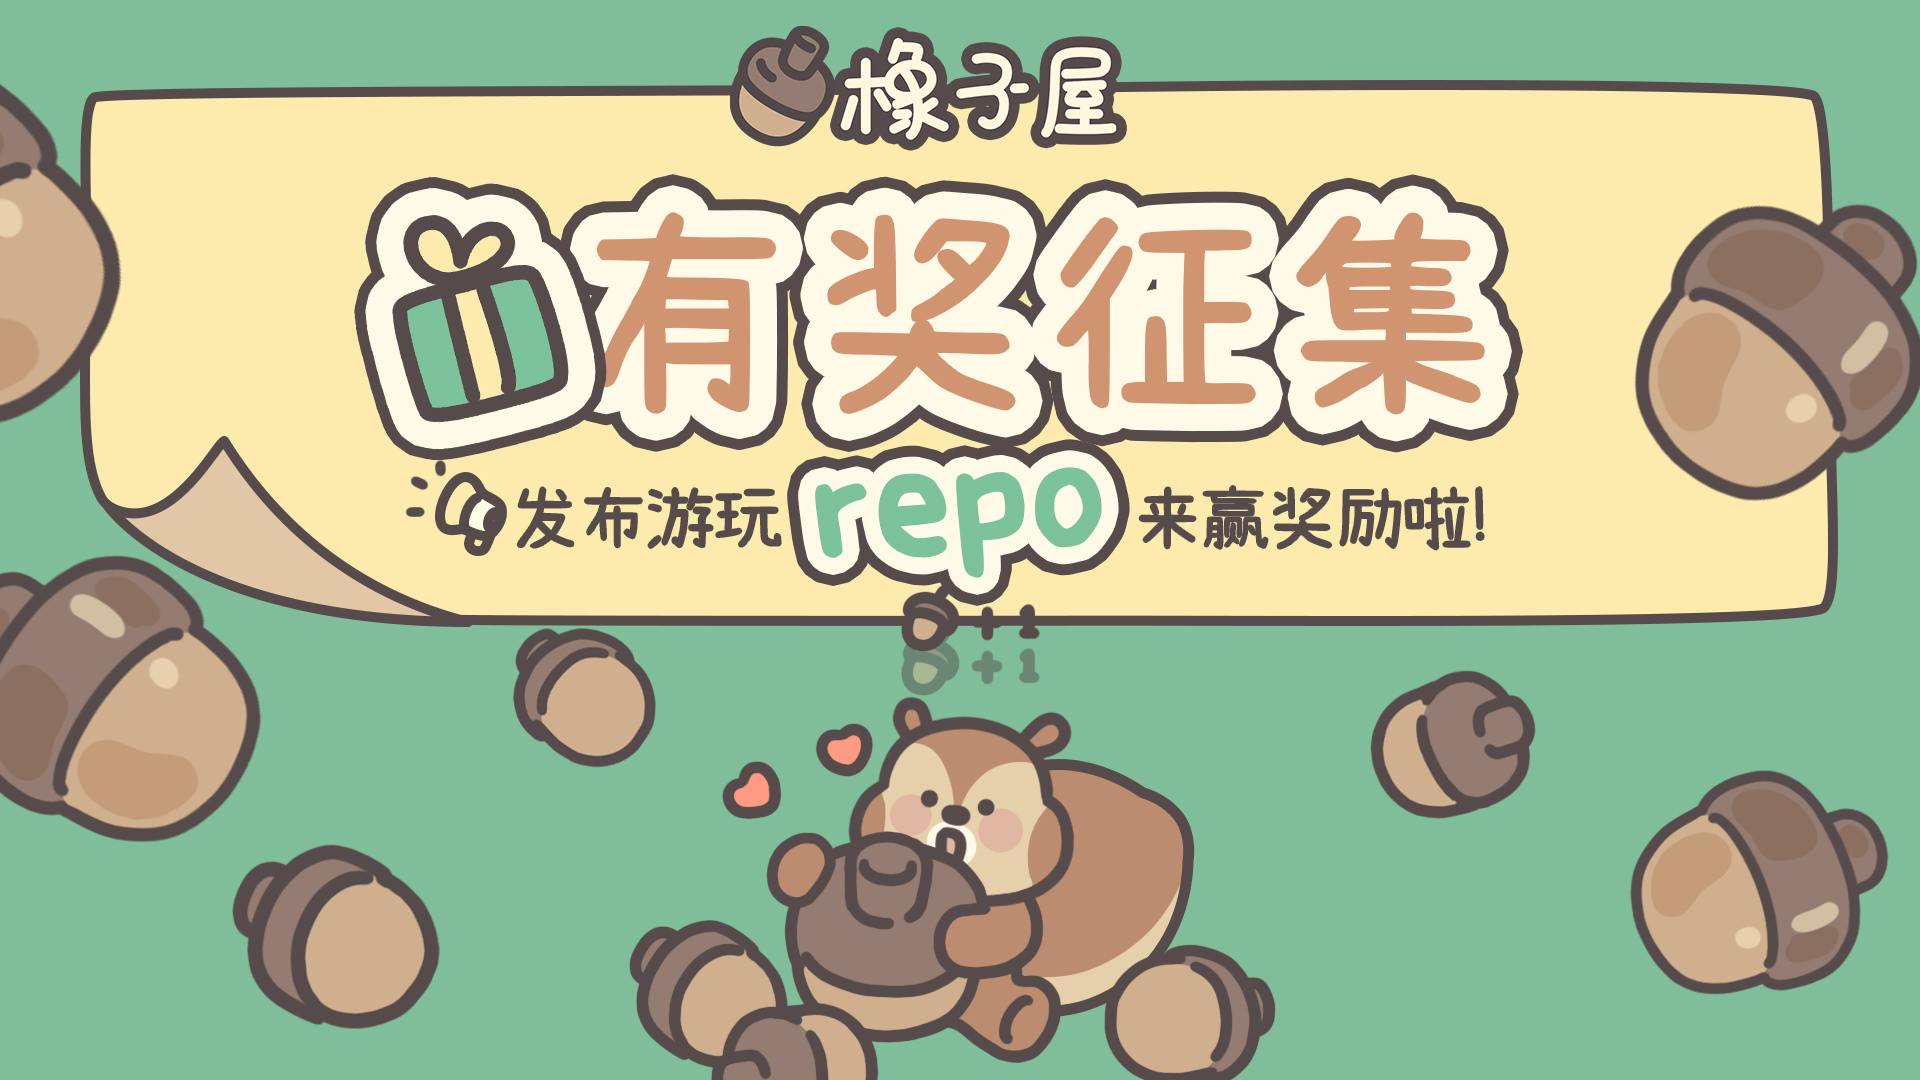 🎁小红书有奖征集活动开启📢发布游玩repo来赢奖励啦！！！